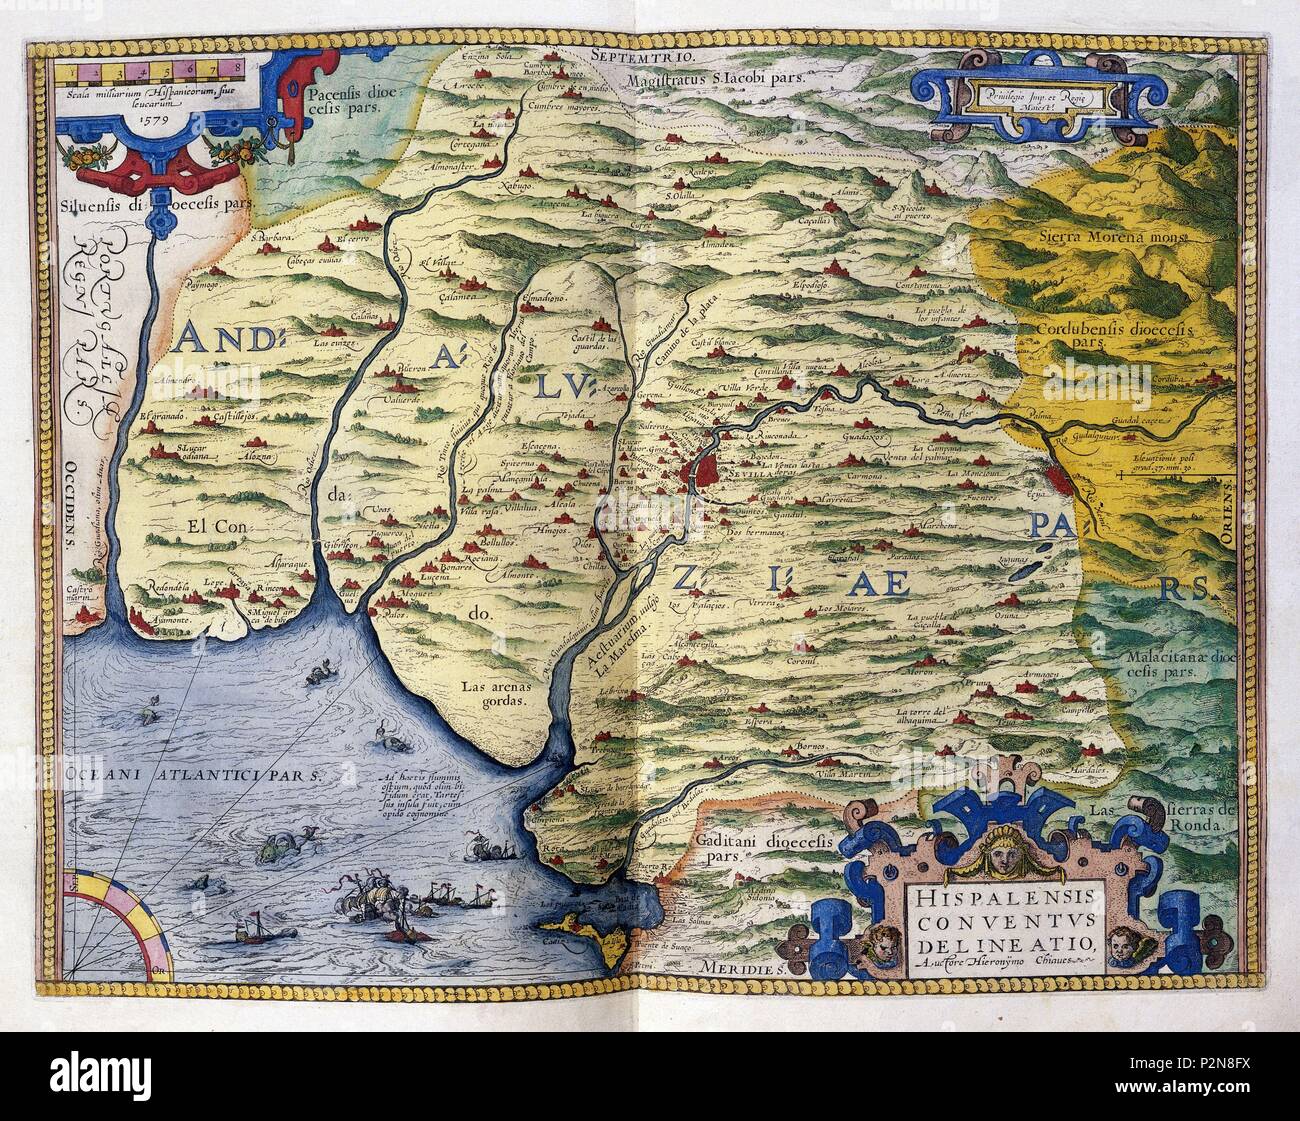 MAPA DE ANDALUCIA-DE CORDOBA A PORTUGAL. Author: Abraham Ortelius (1527-1598). Location: SERVICIO GEOGRAFICO DEL EJERCITO, MADRID, SPAIN. Stock Photo